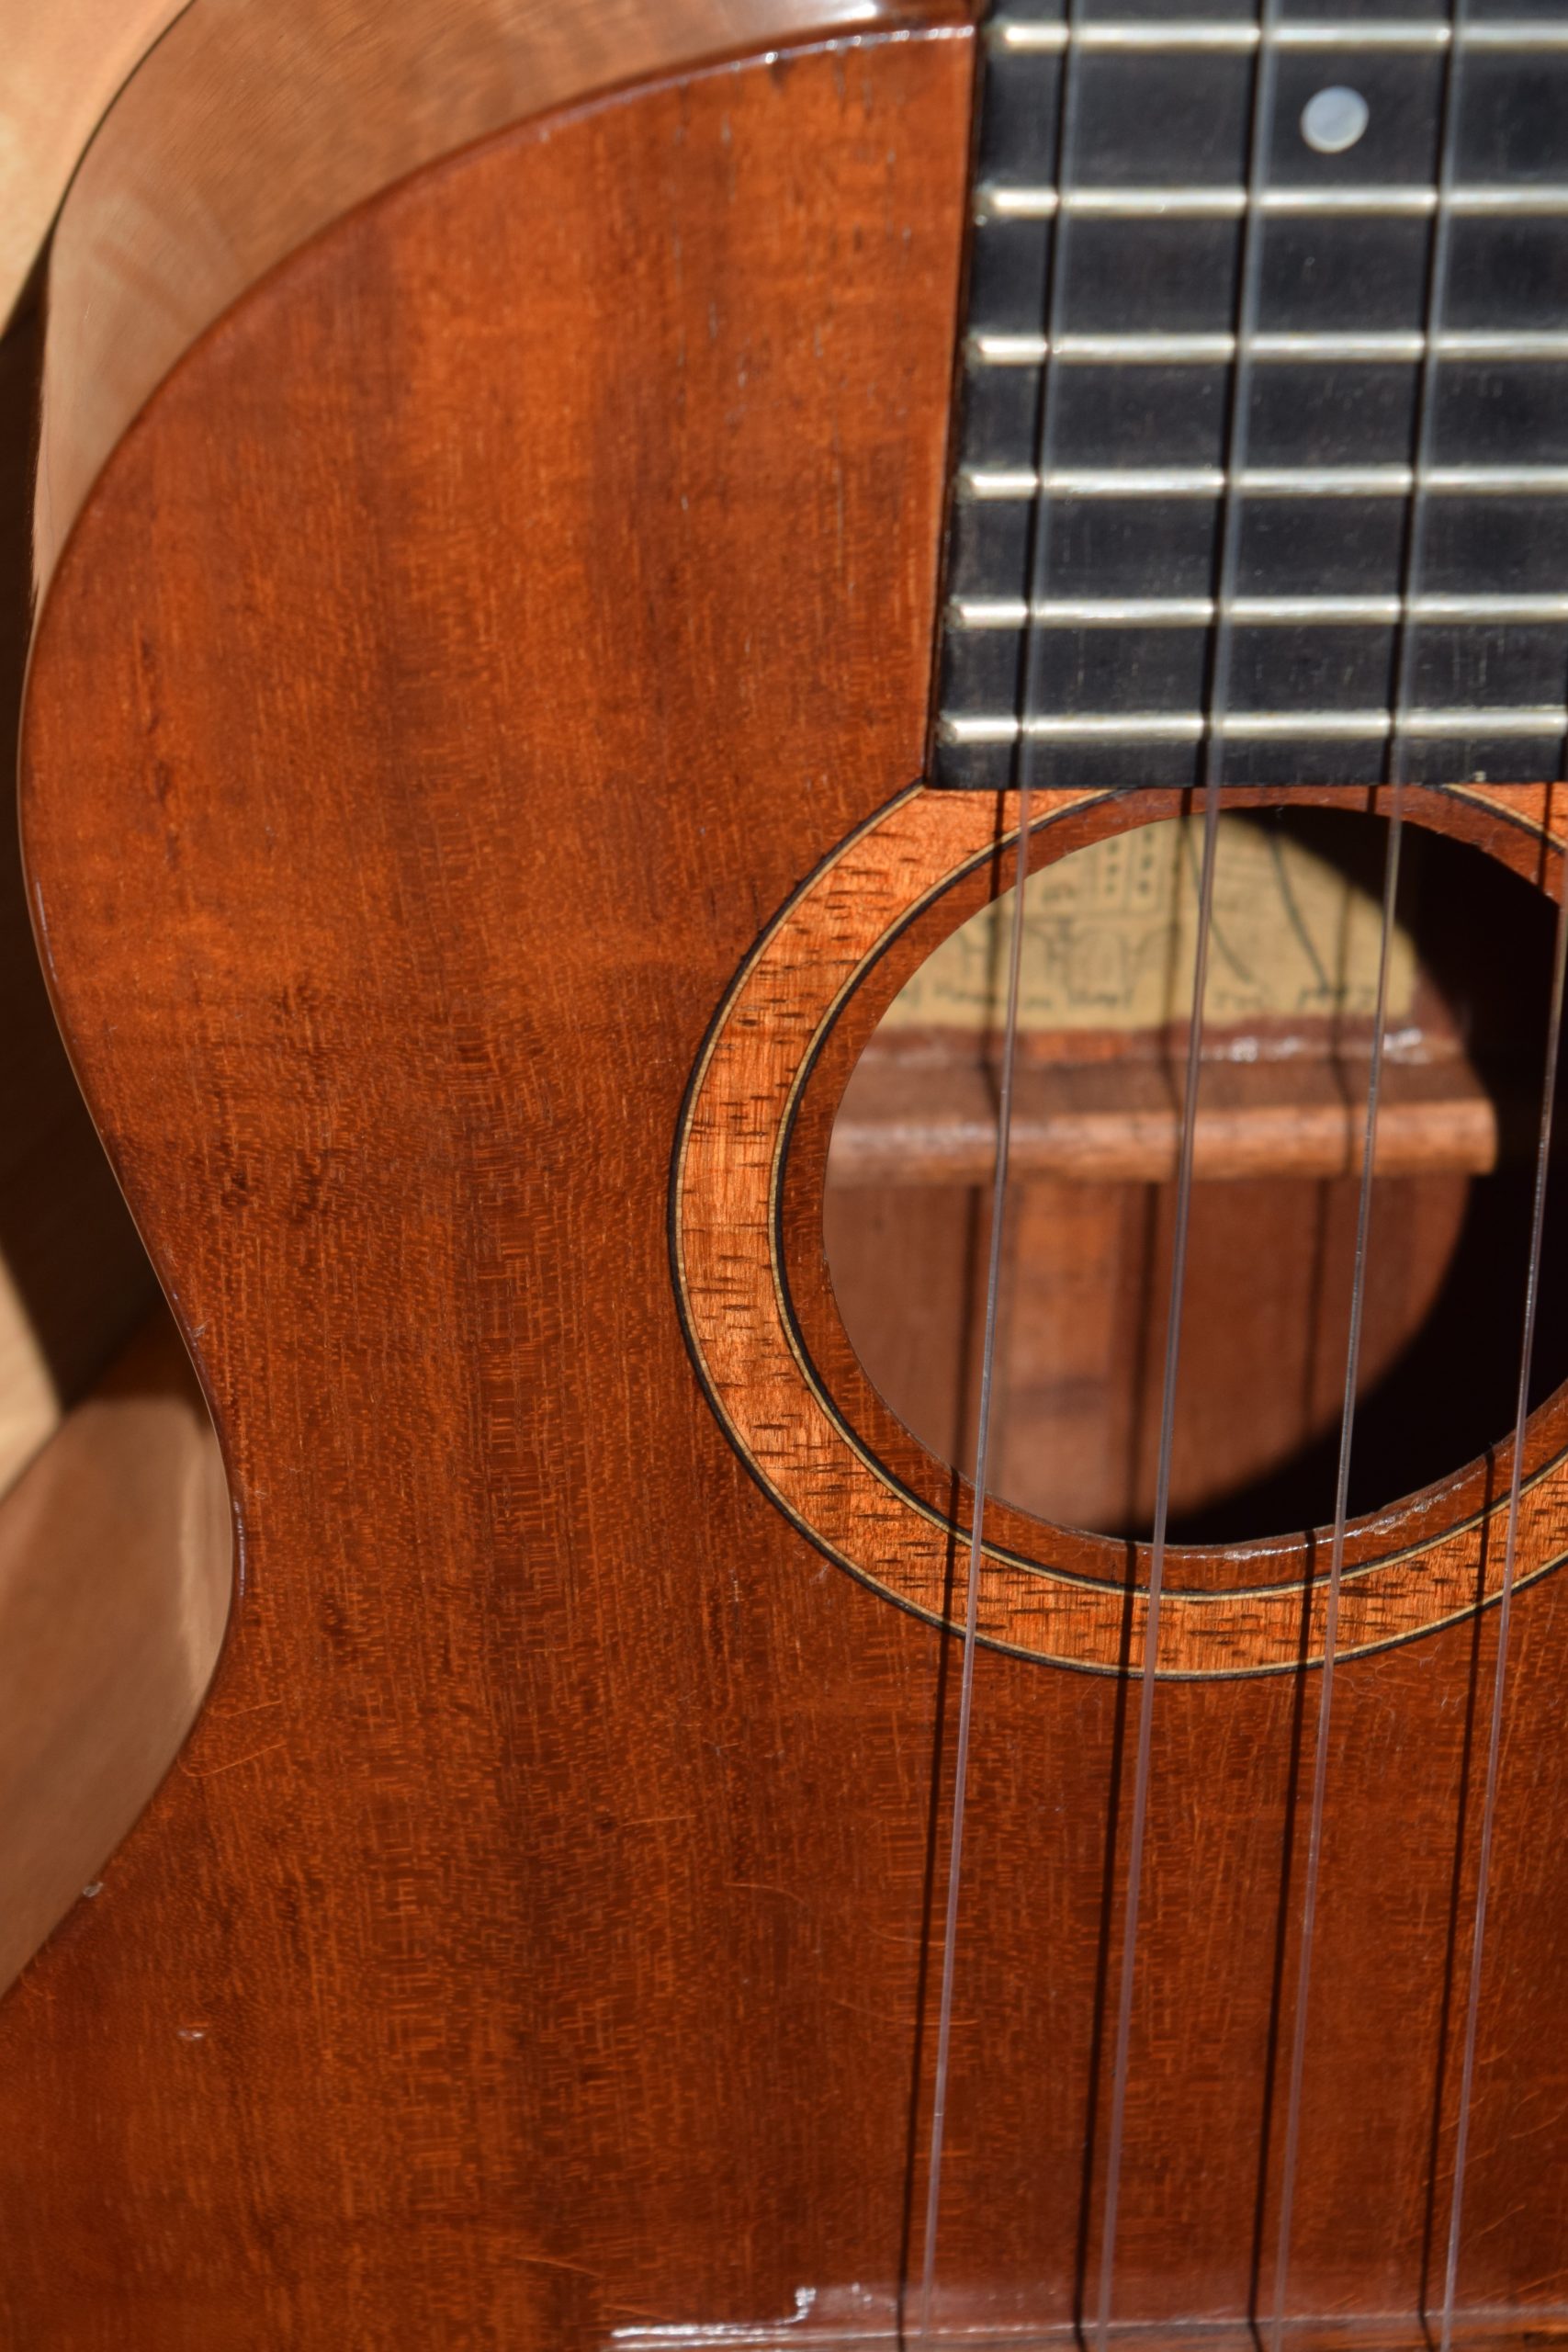 SHIMO ukulele